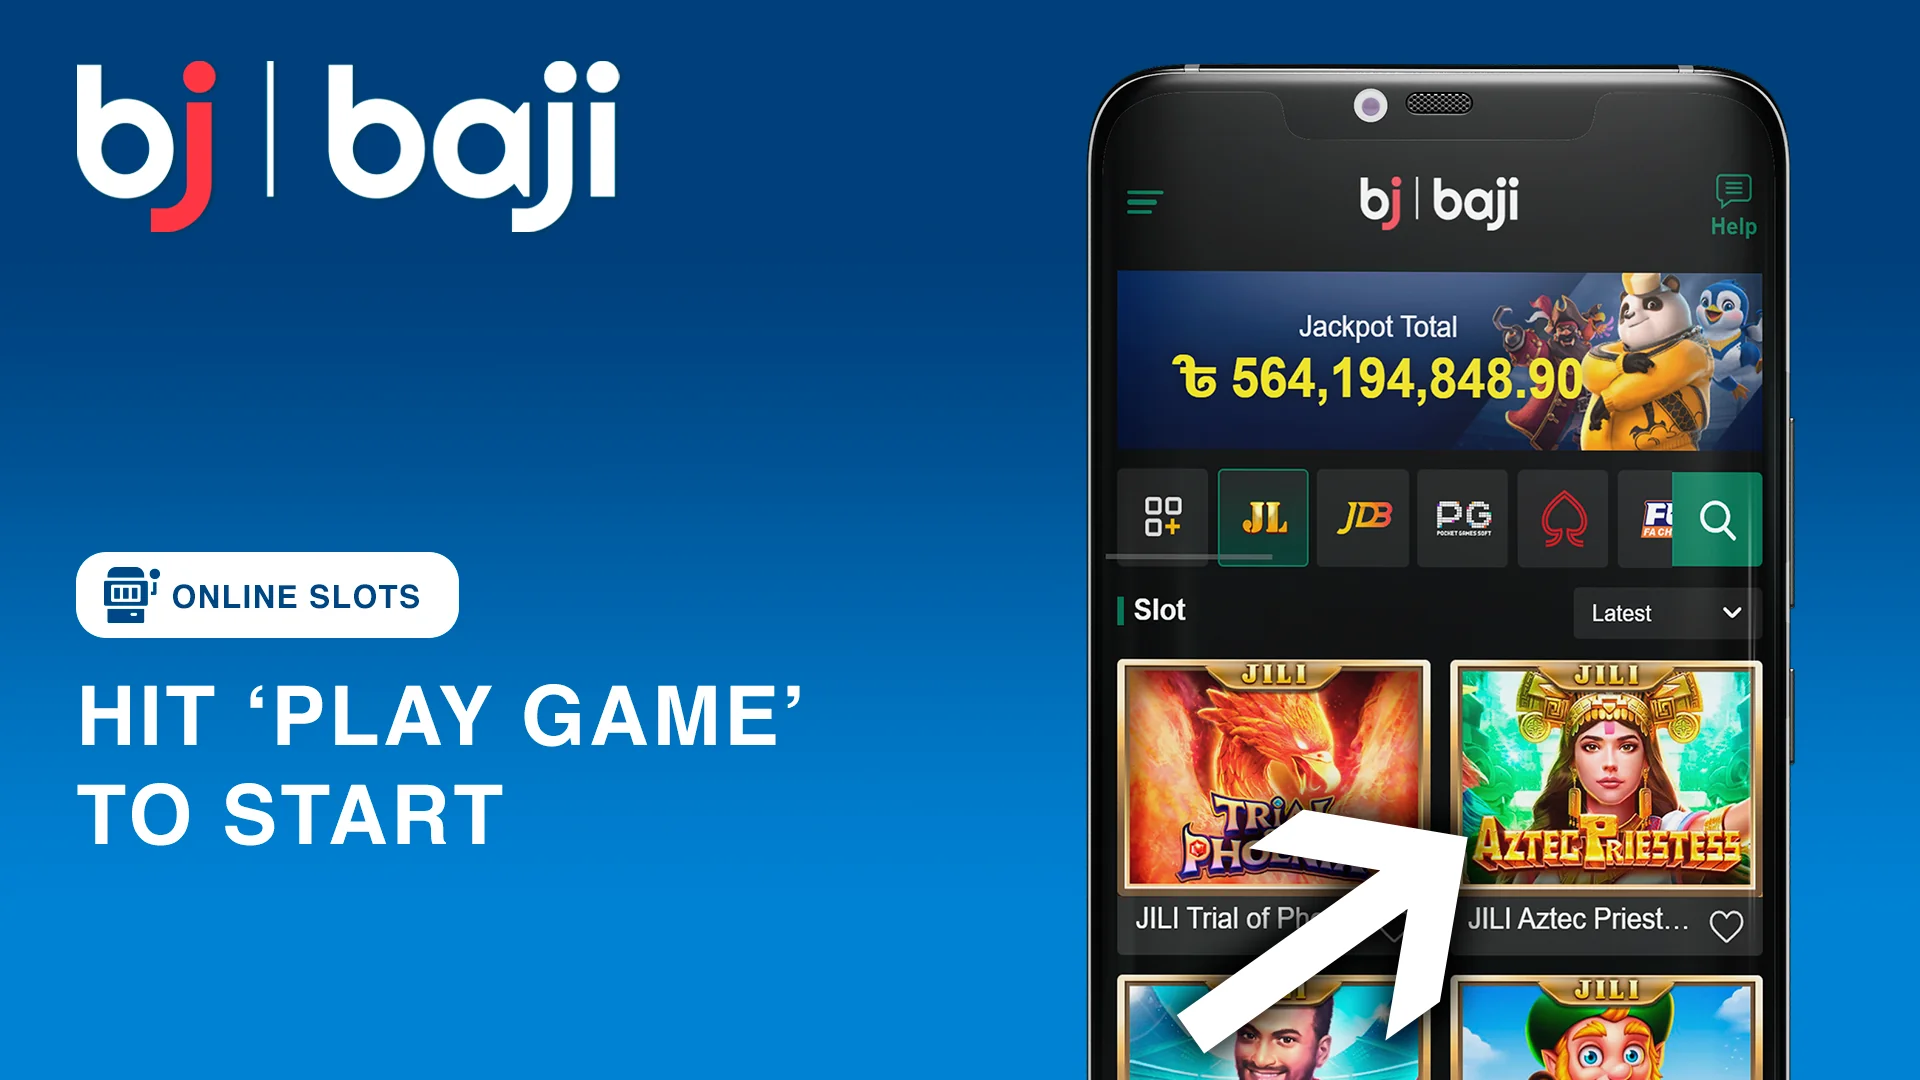 Hit 'Play Game' to start playing slots at Baji